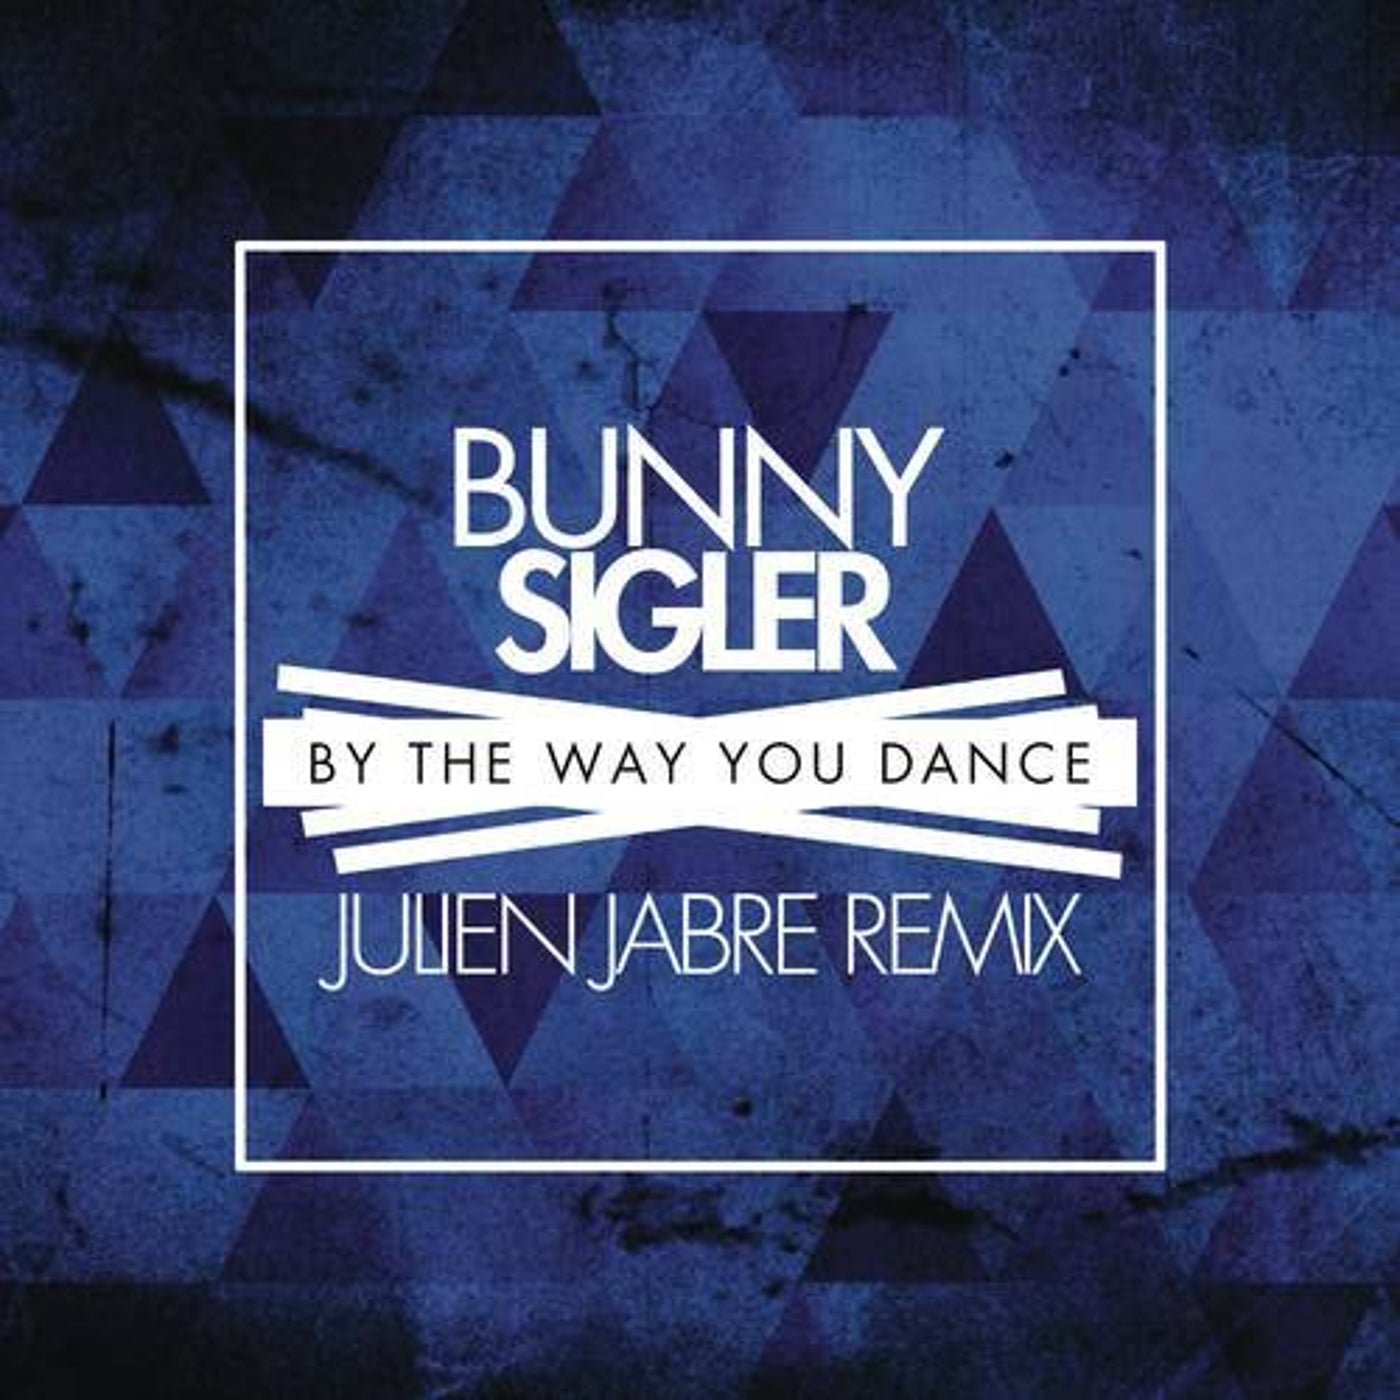 By the Way You Dance (Julien Jabre Remix)